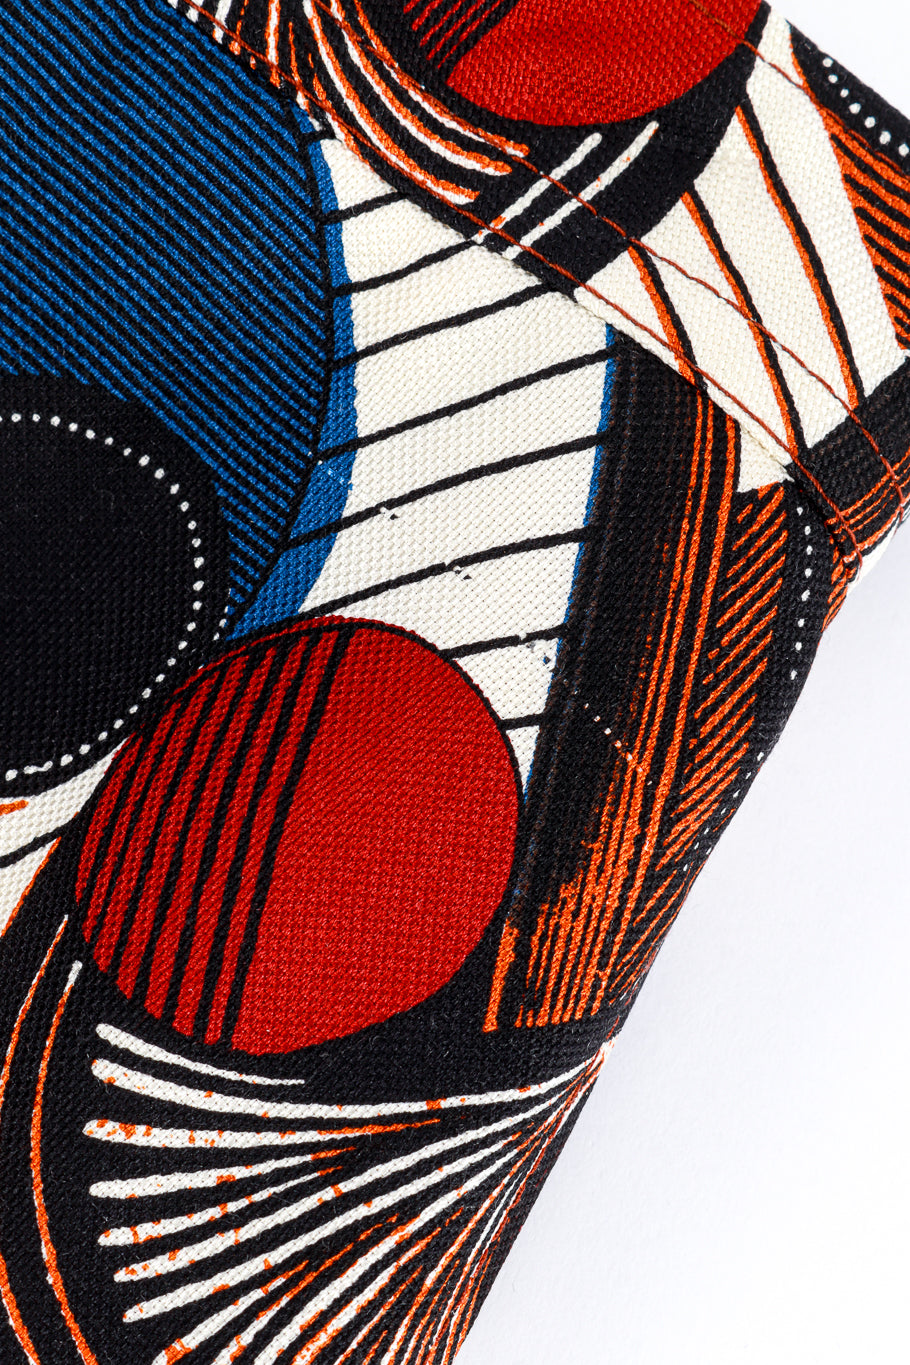 Hermes Ethnic Print Skirt pull detail @RECESS LA